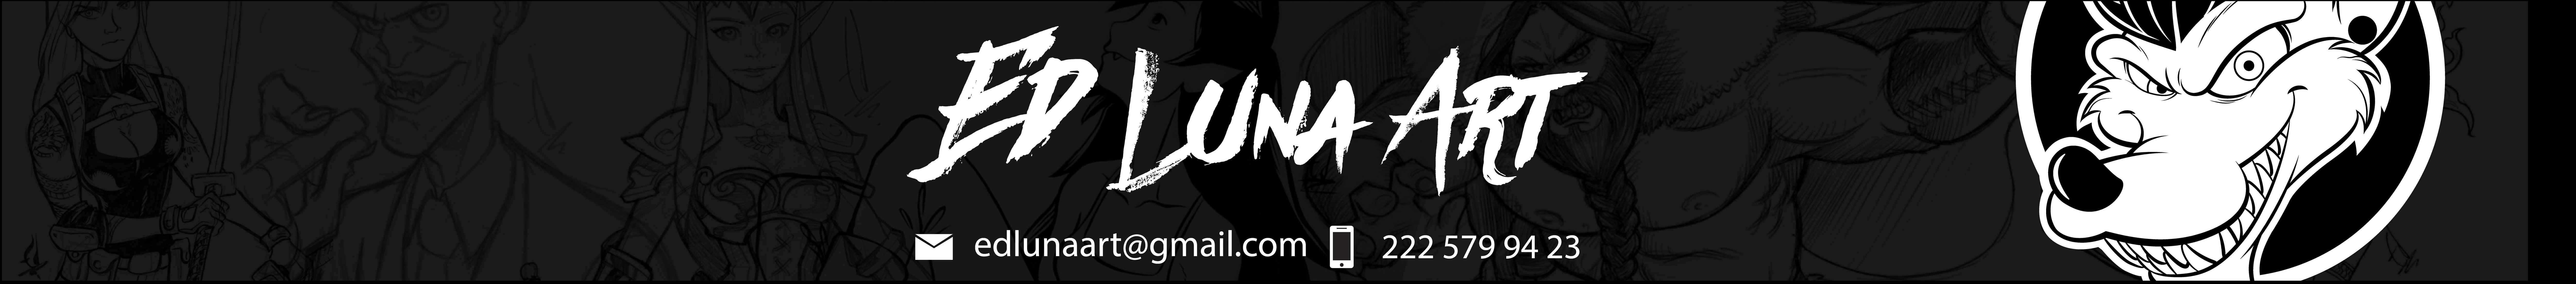 Ed Luna Art's profile banner